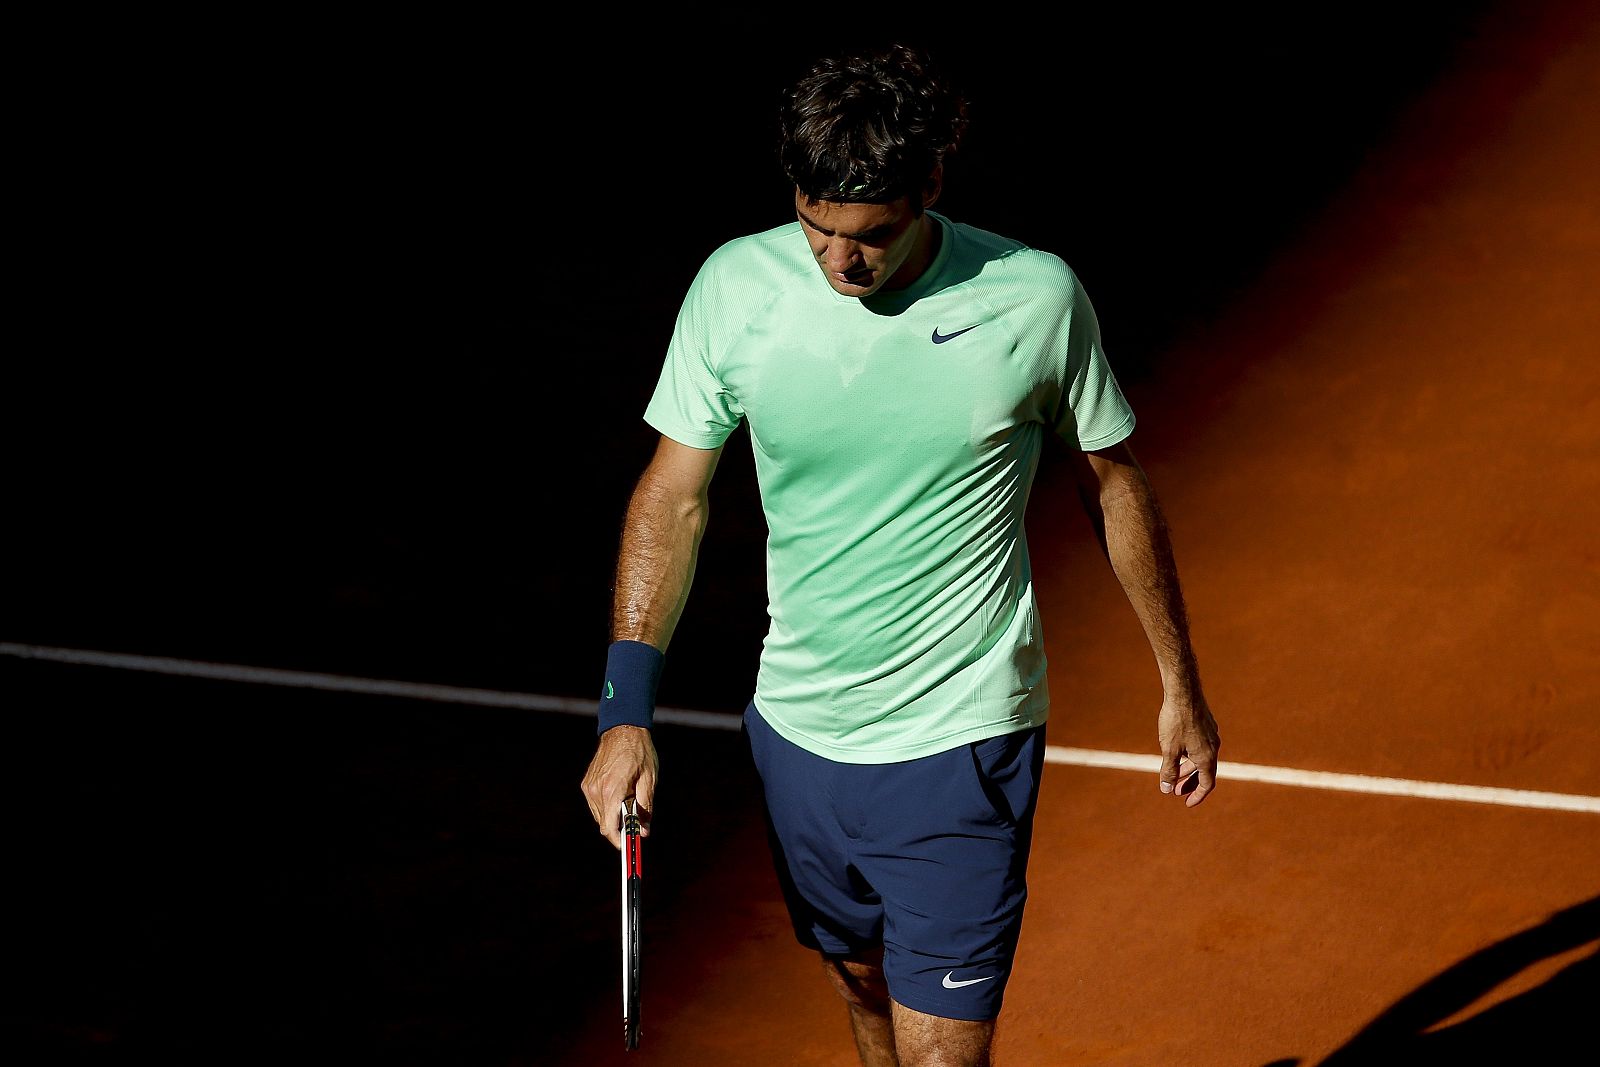 El tenista suizo Roger Federer al concluir su partido contra Nishikori